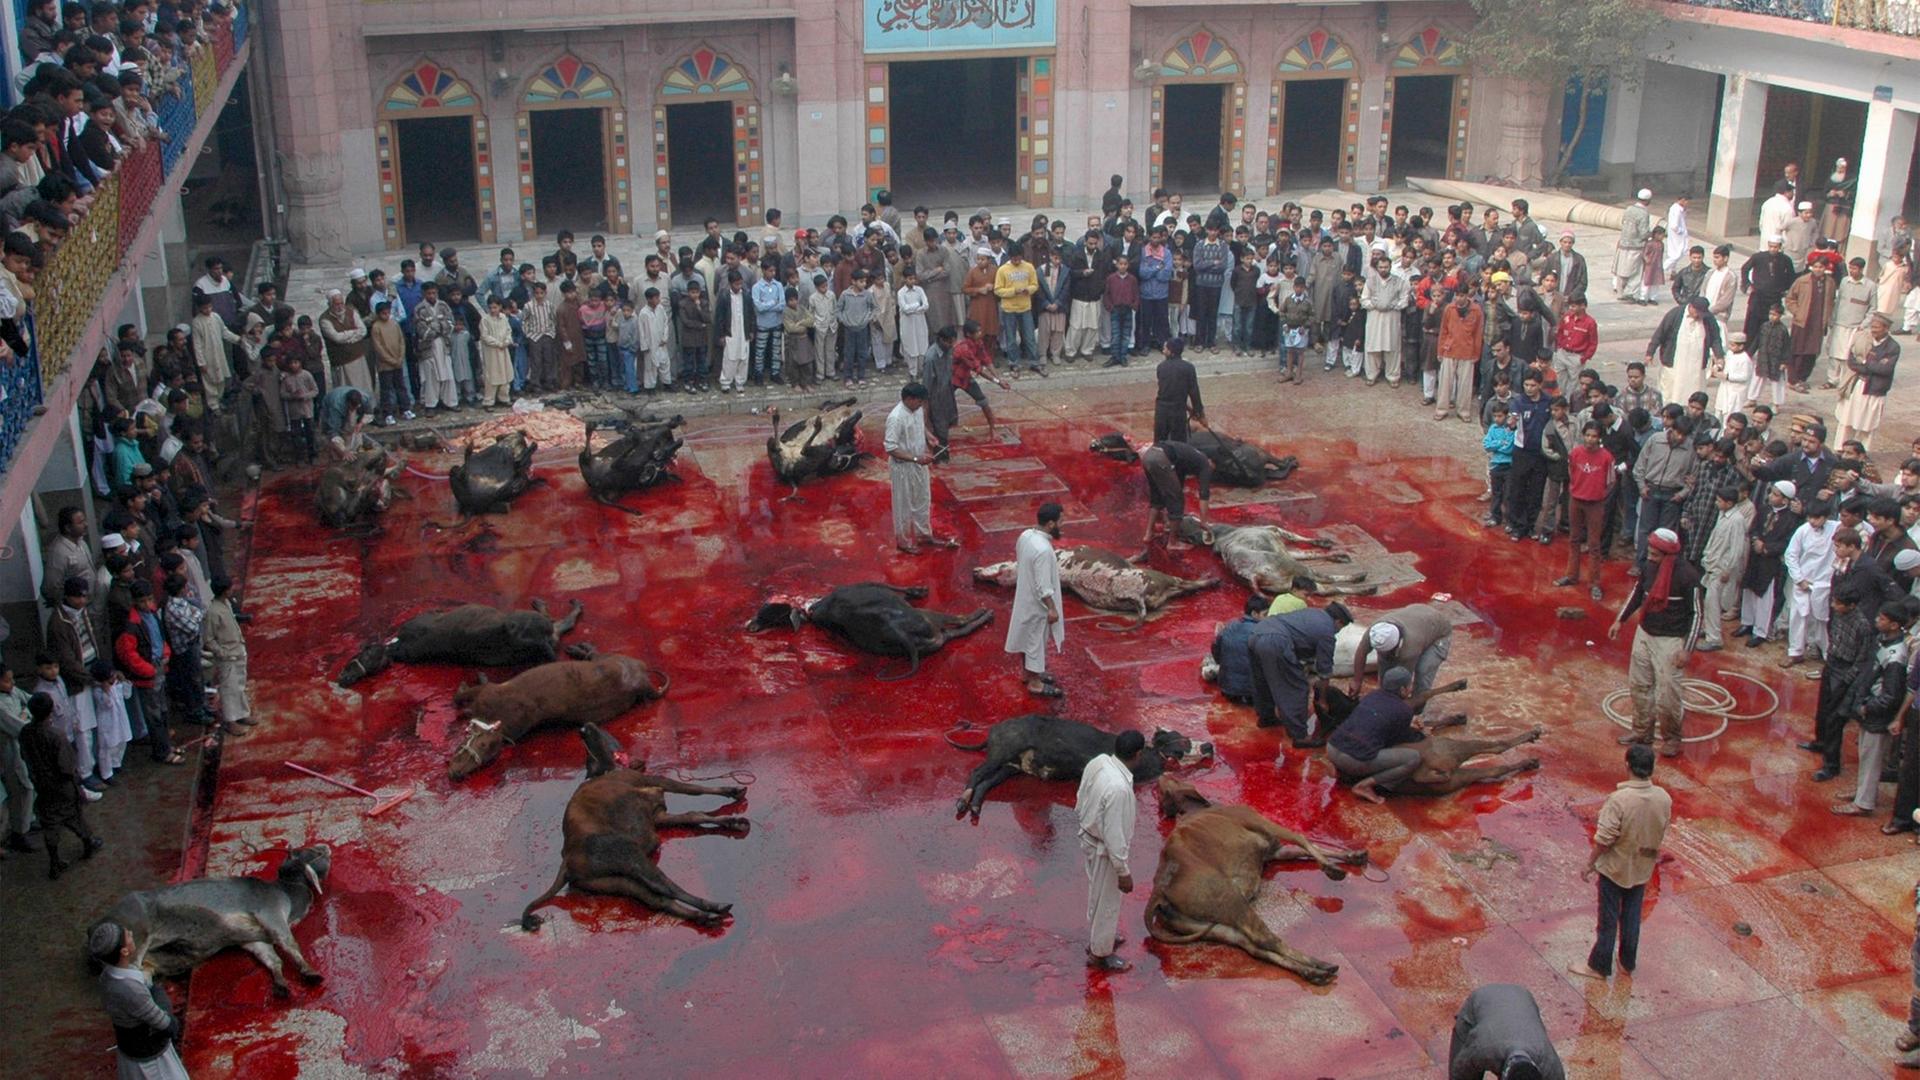 schlachten von tieren beim islamischem opferfest